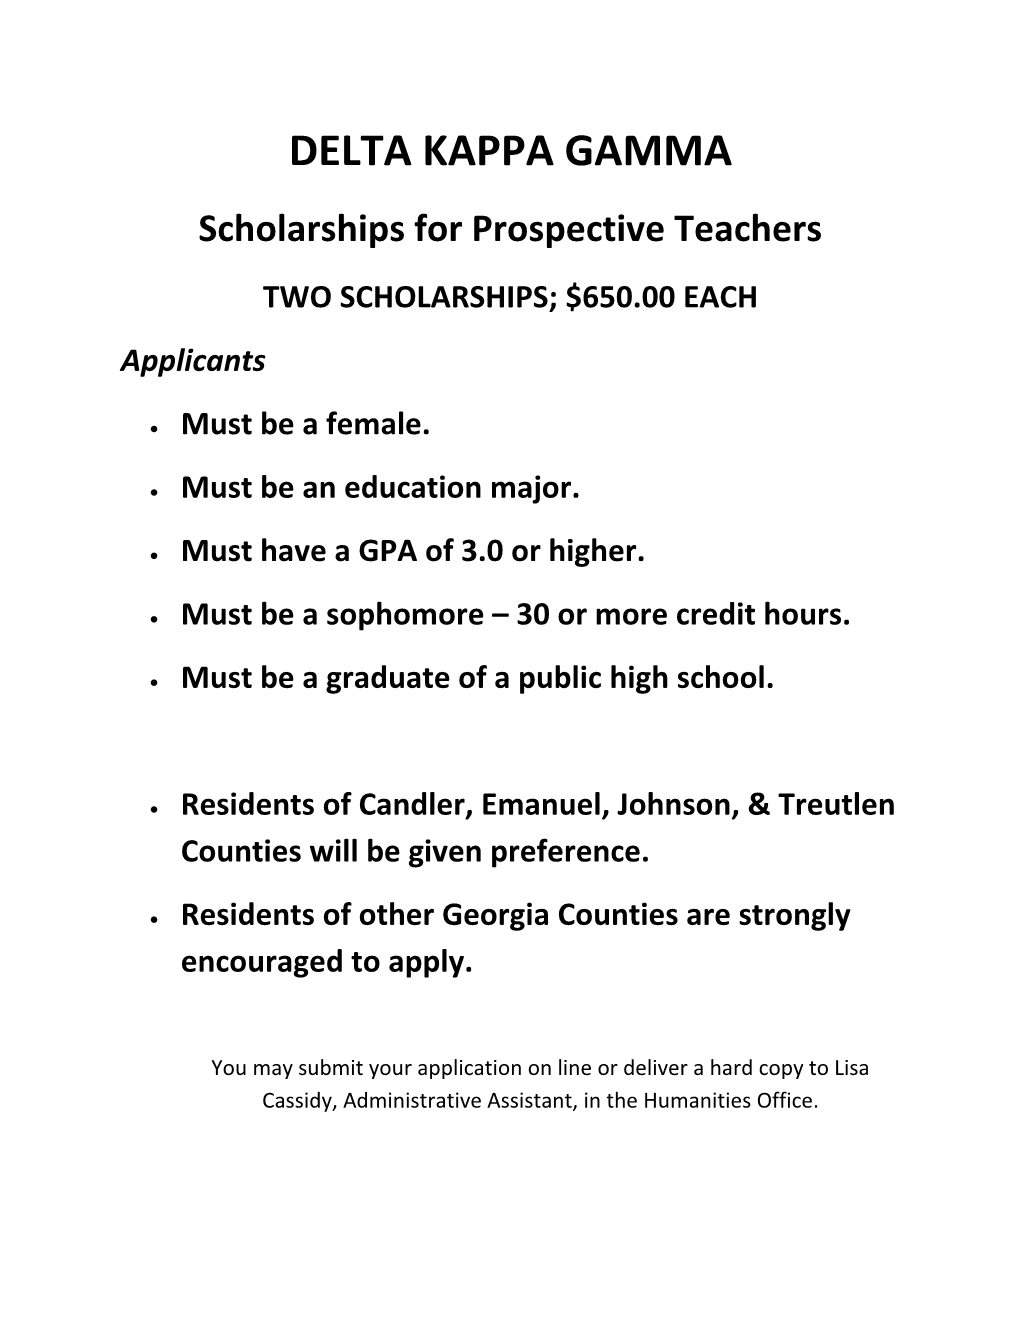 Scholarships for Prospective Teachers